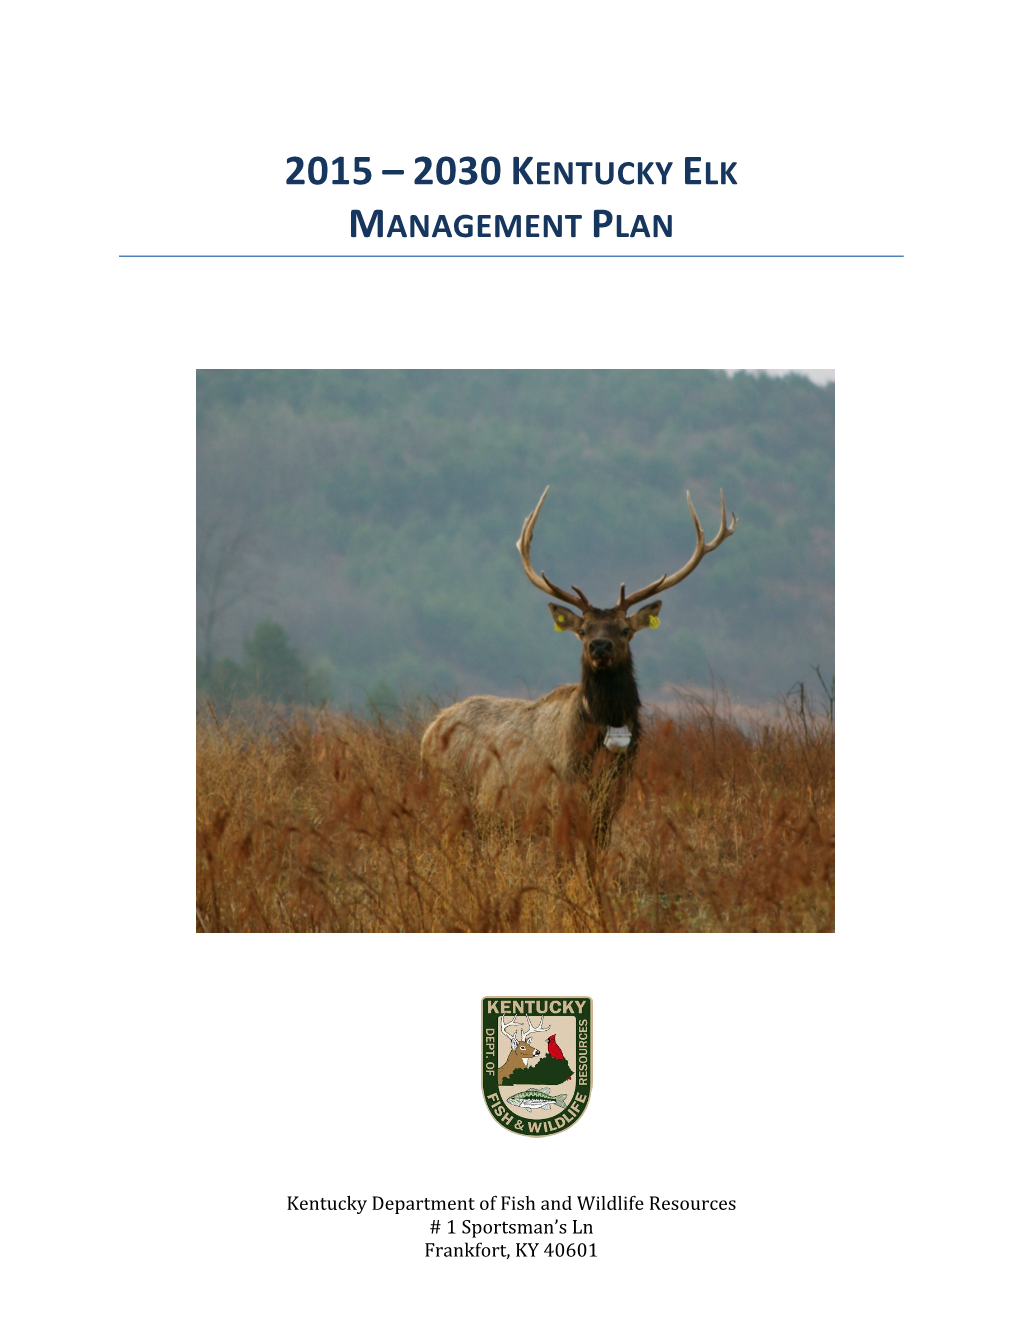 2015 – 2030 Kentucky Elk Management Plan